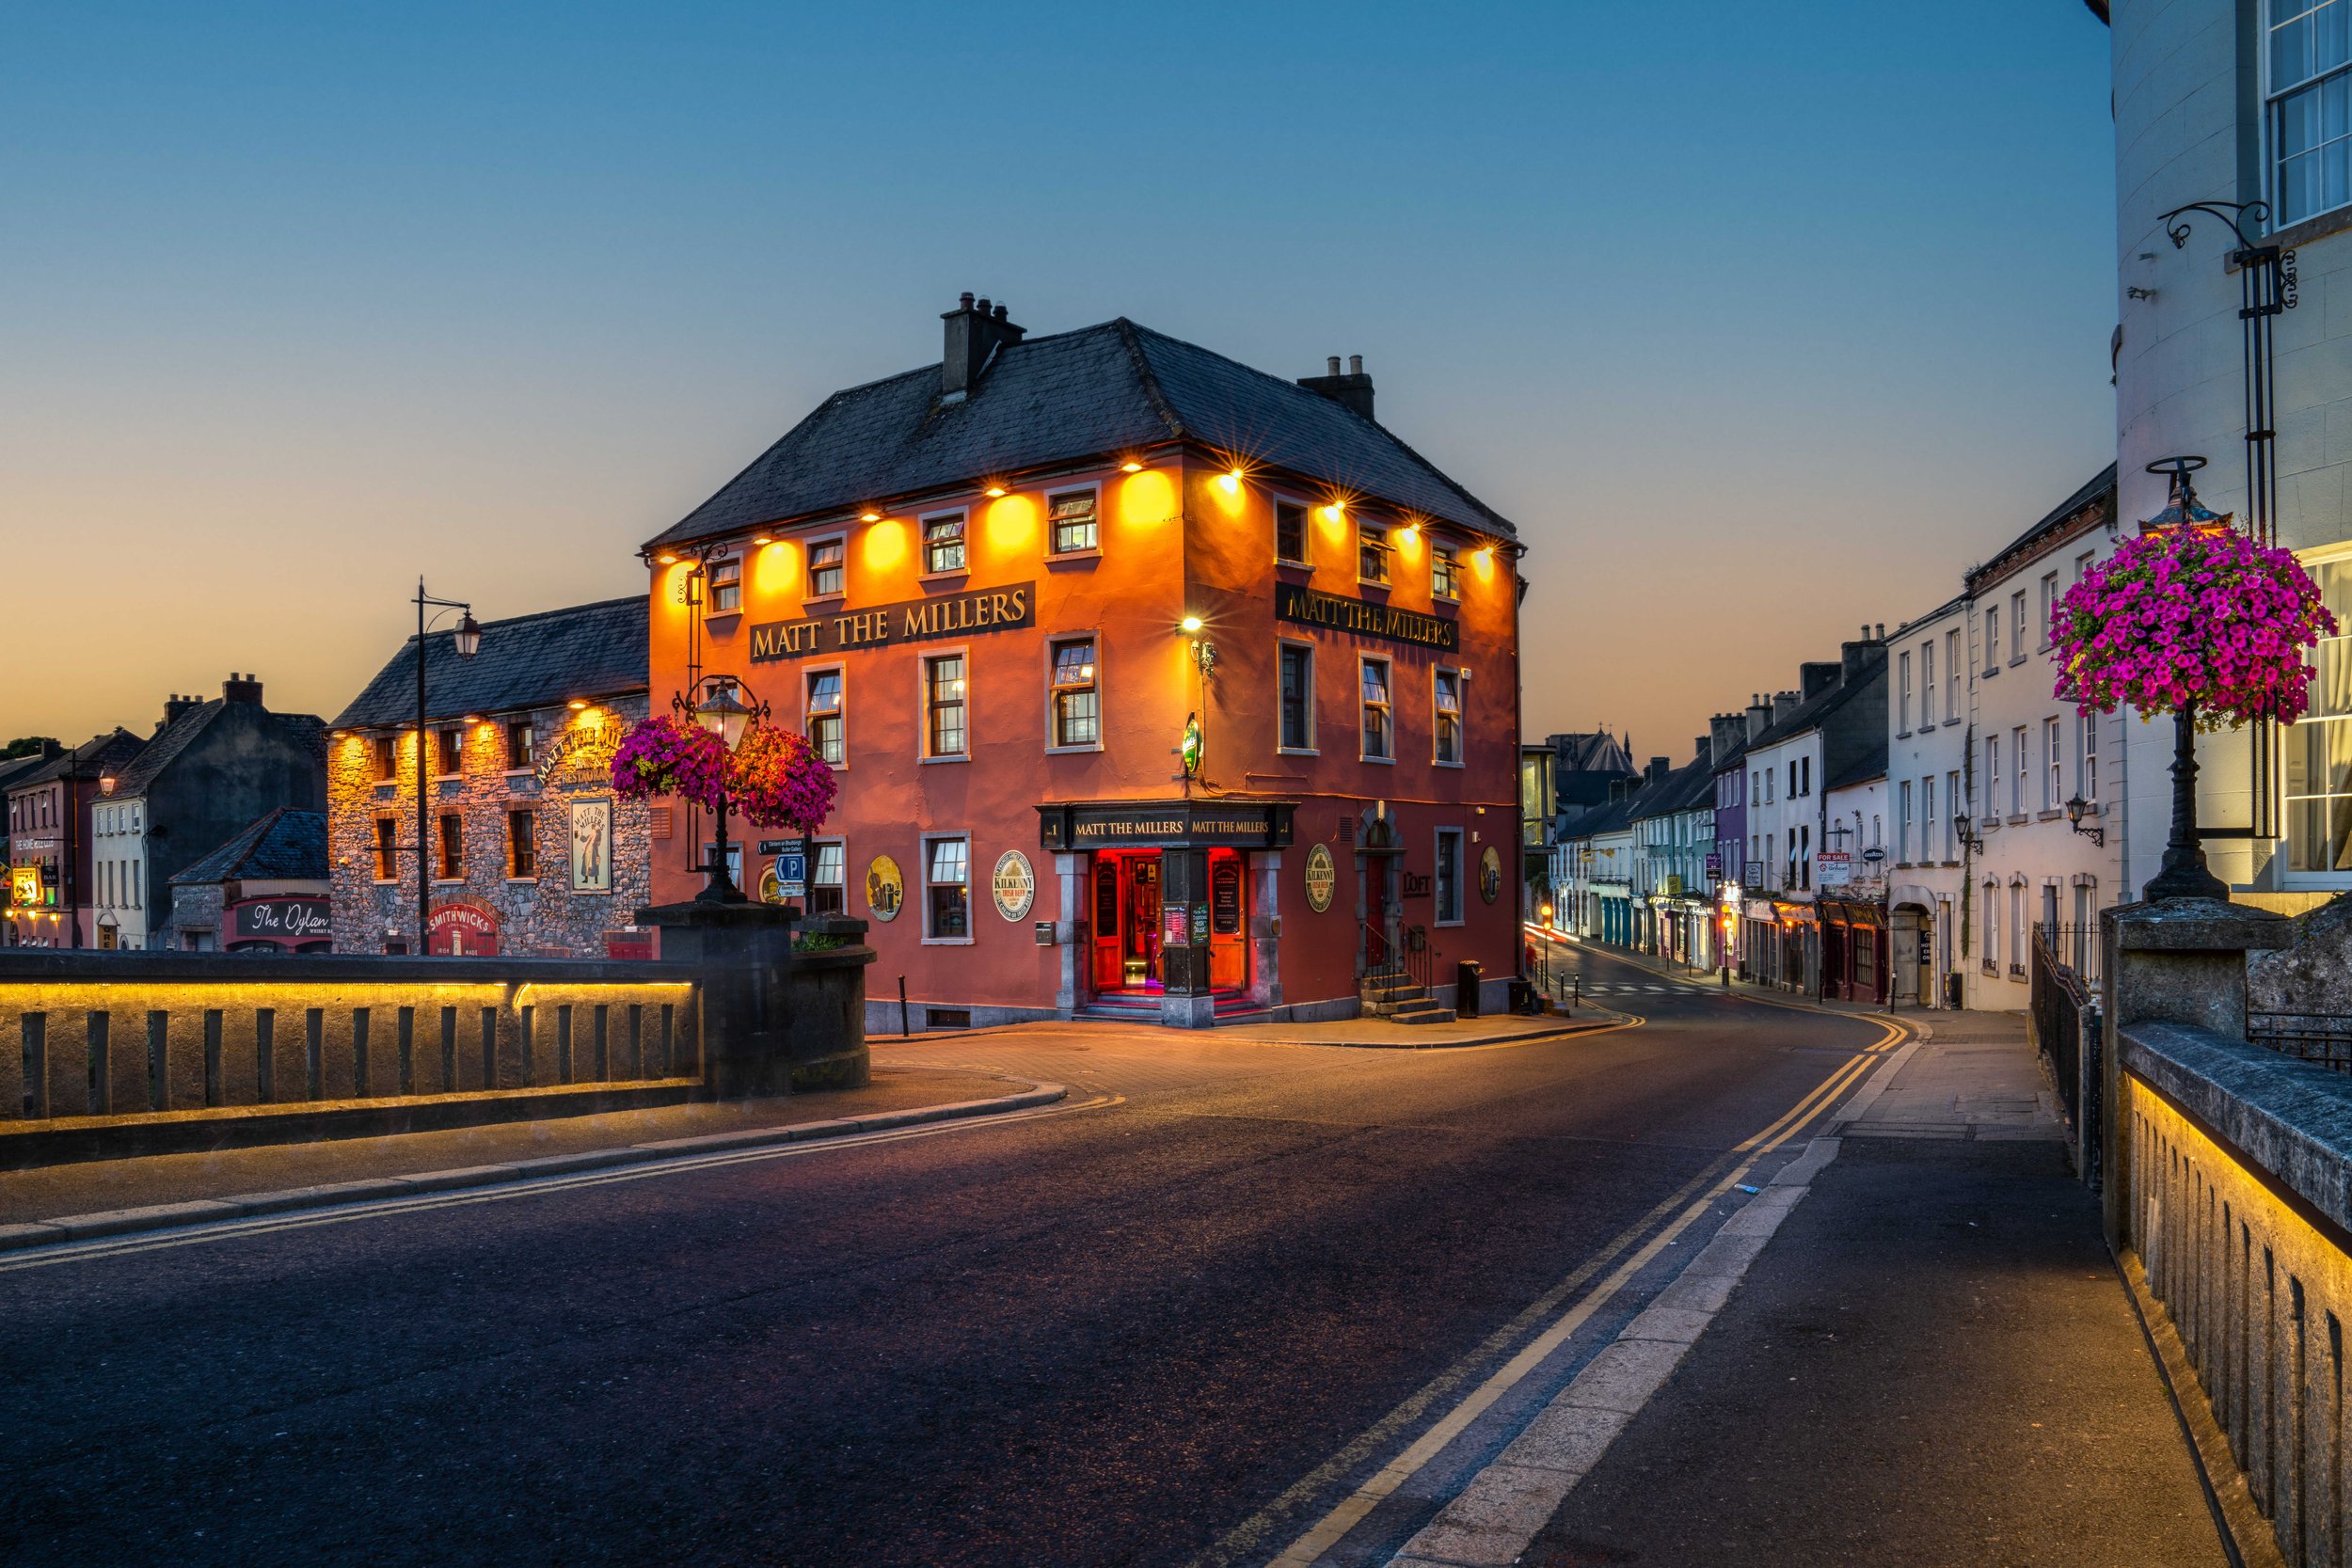 Kilkenny town